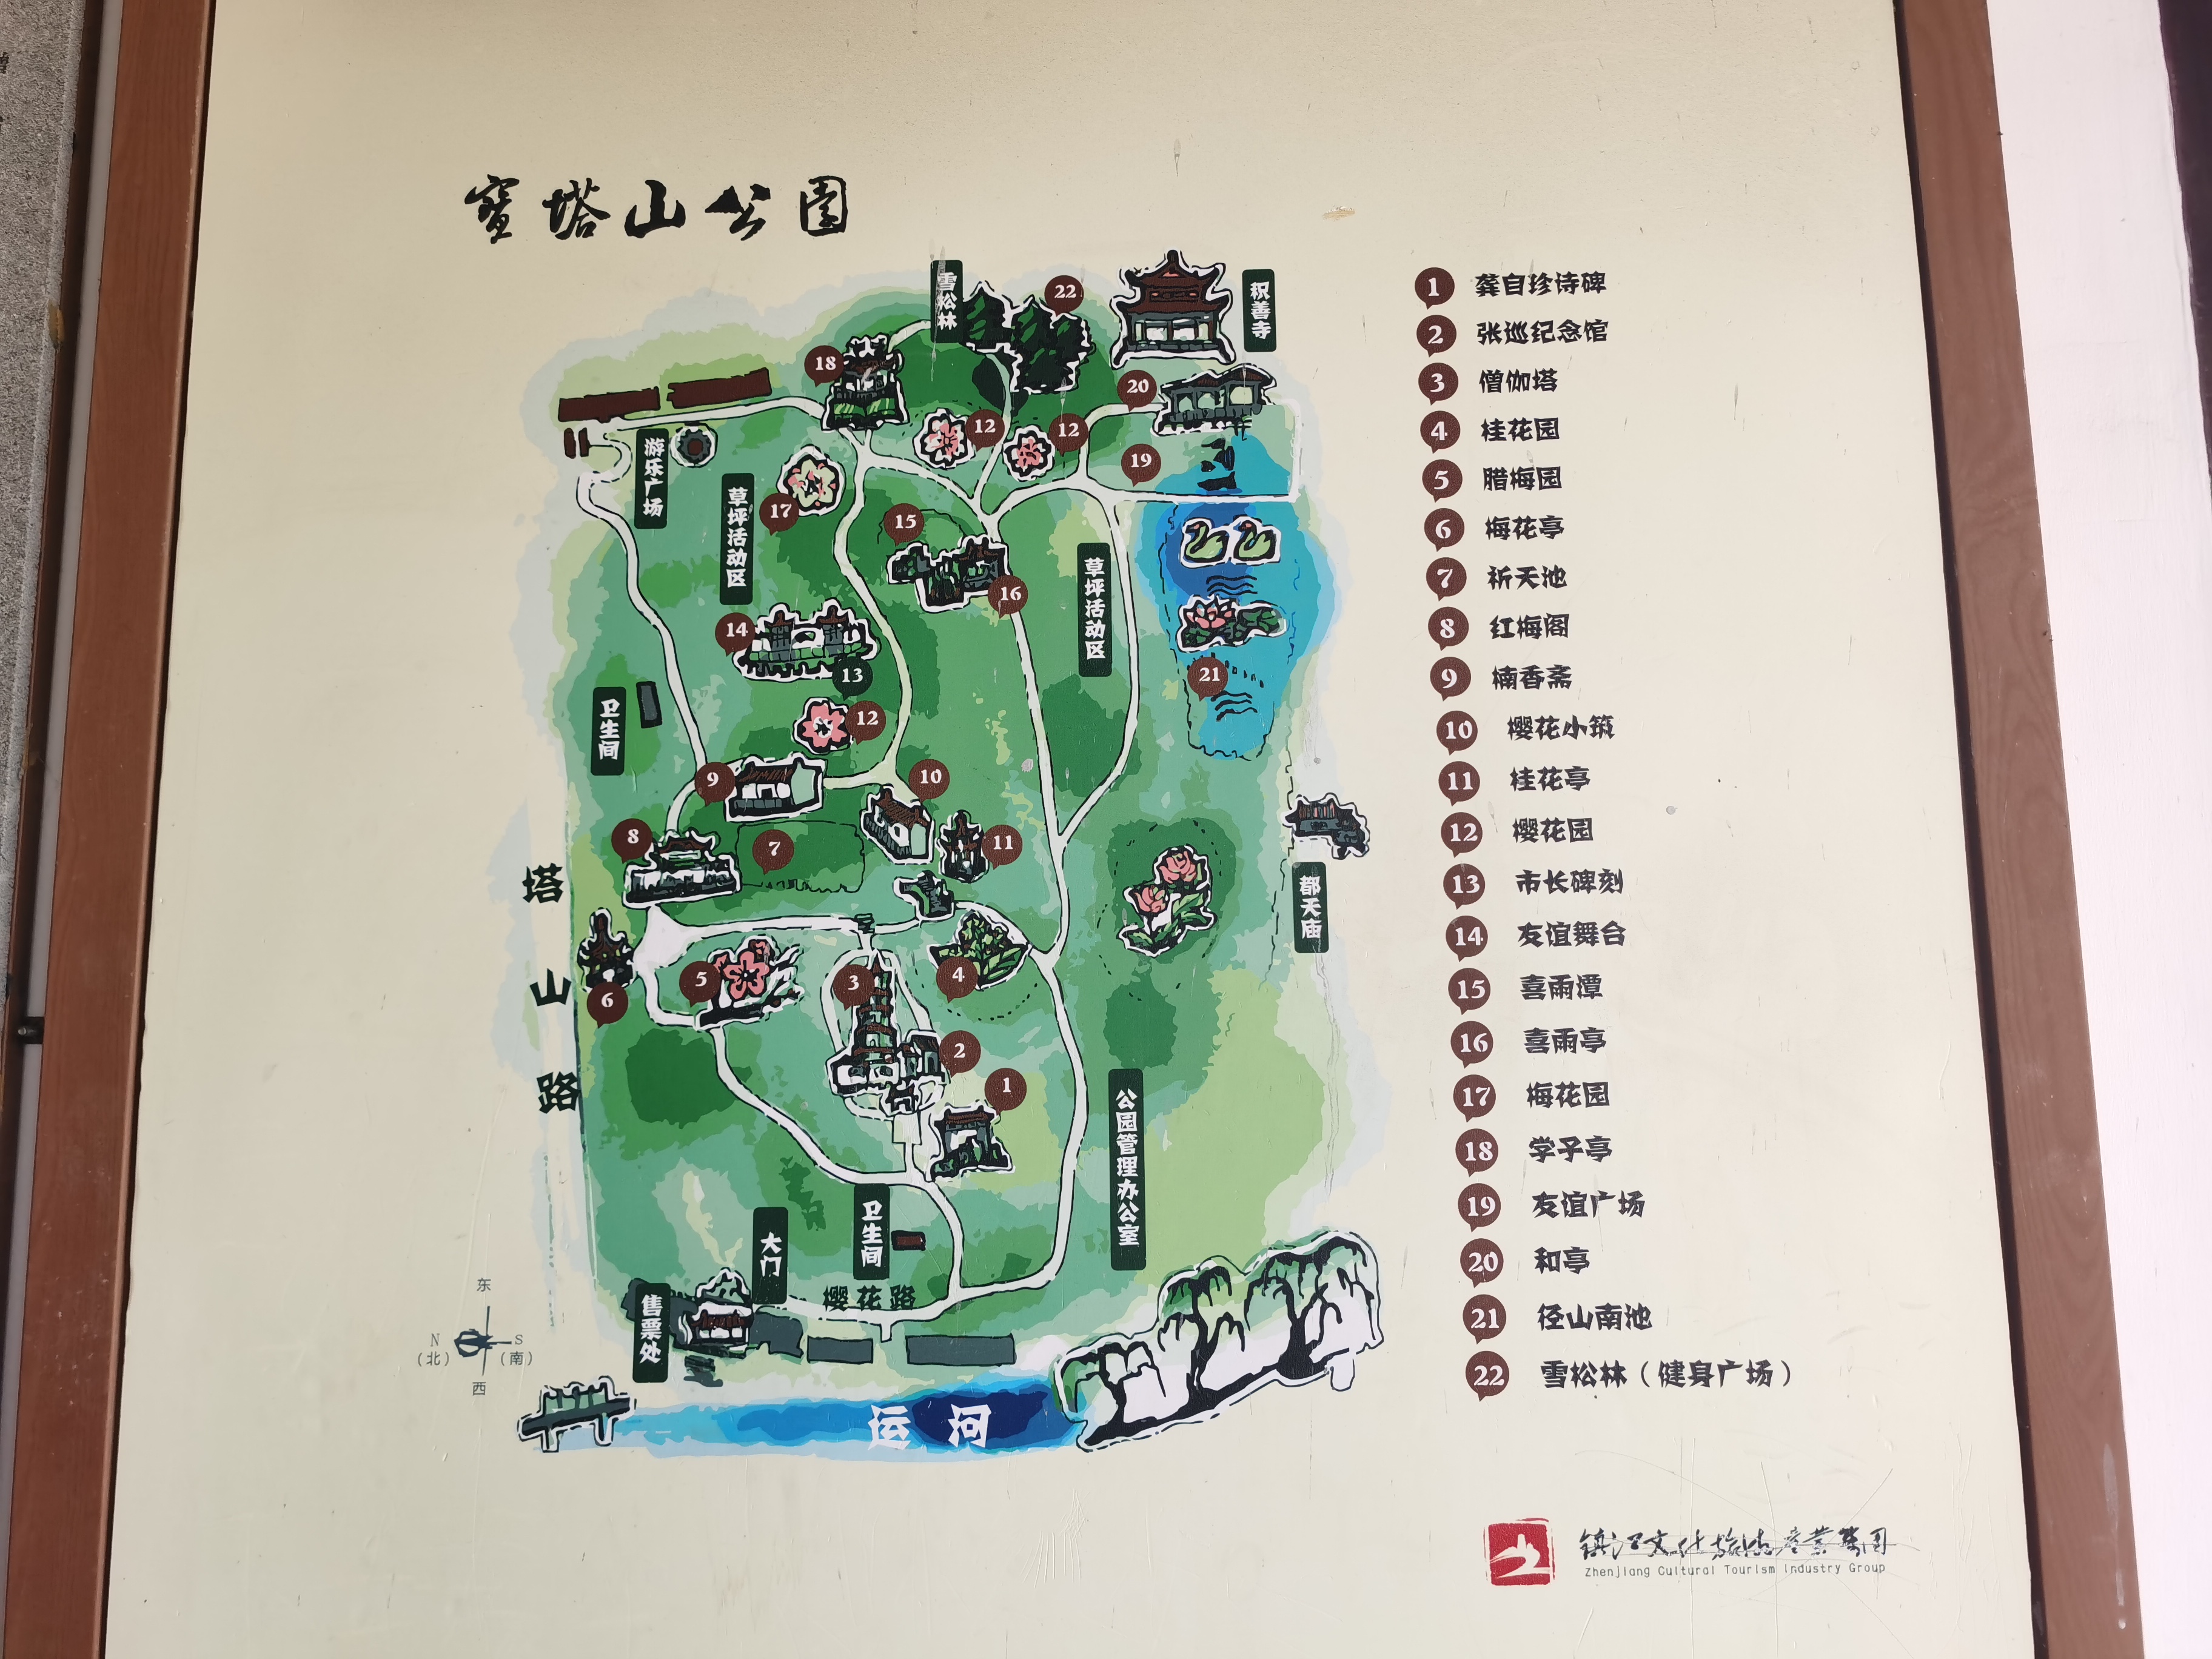 江苏镇江宝塔山公园有株绿色樱花